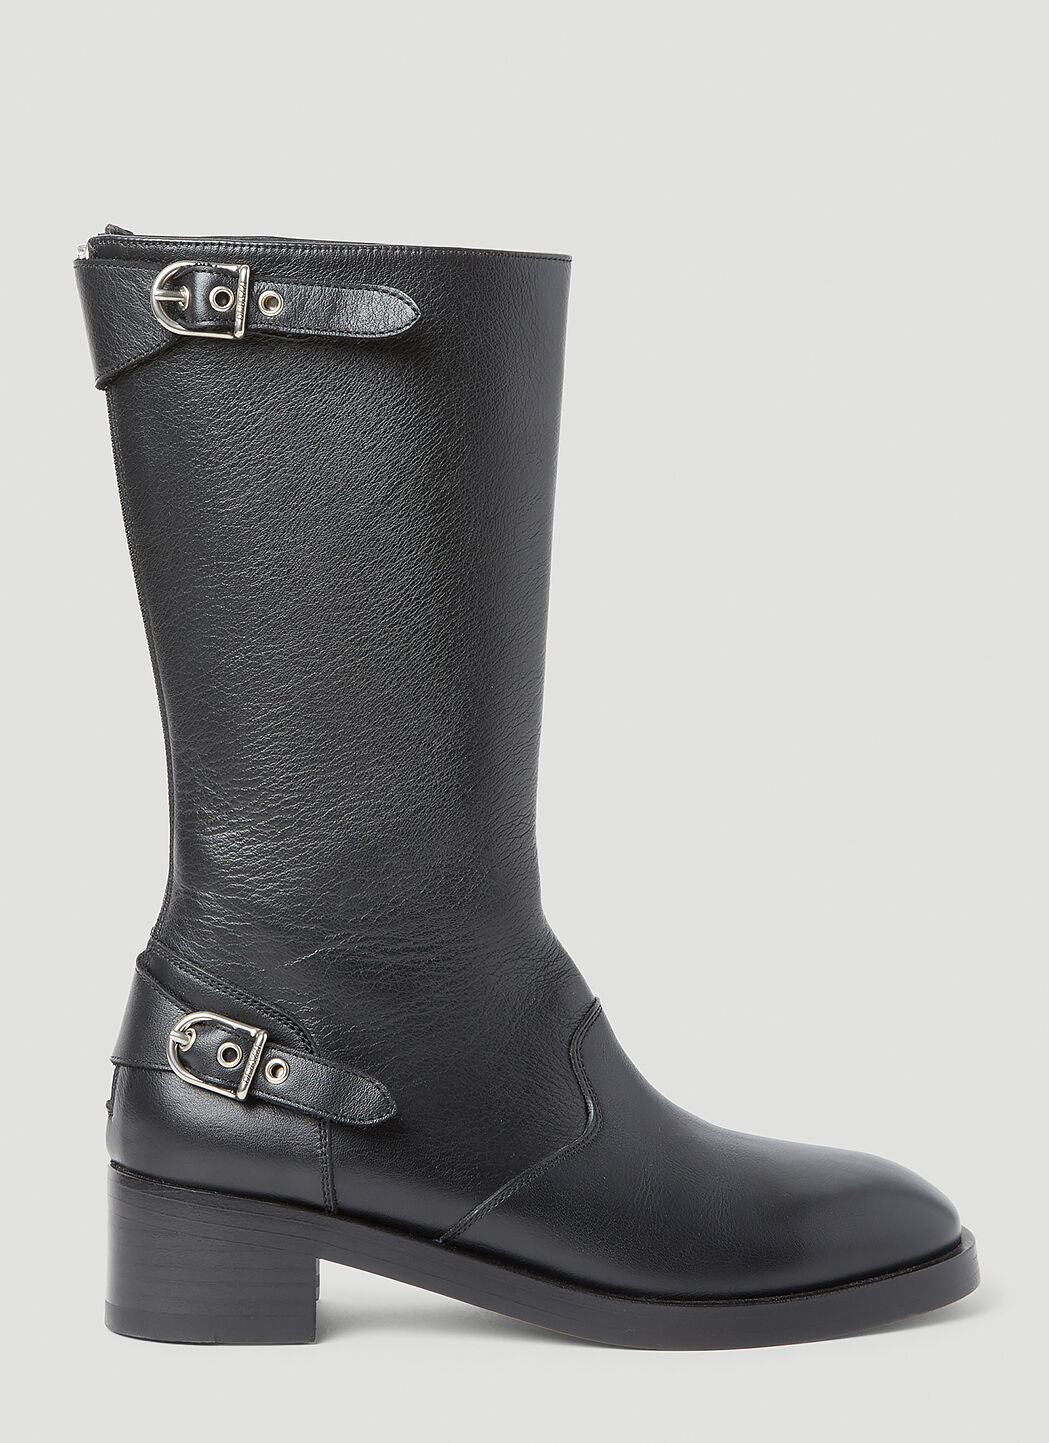 Durazzi Milano Zip Back Buckle Boots Grey drz0254004